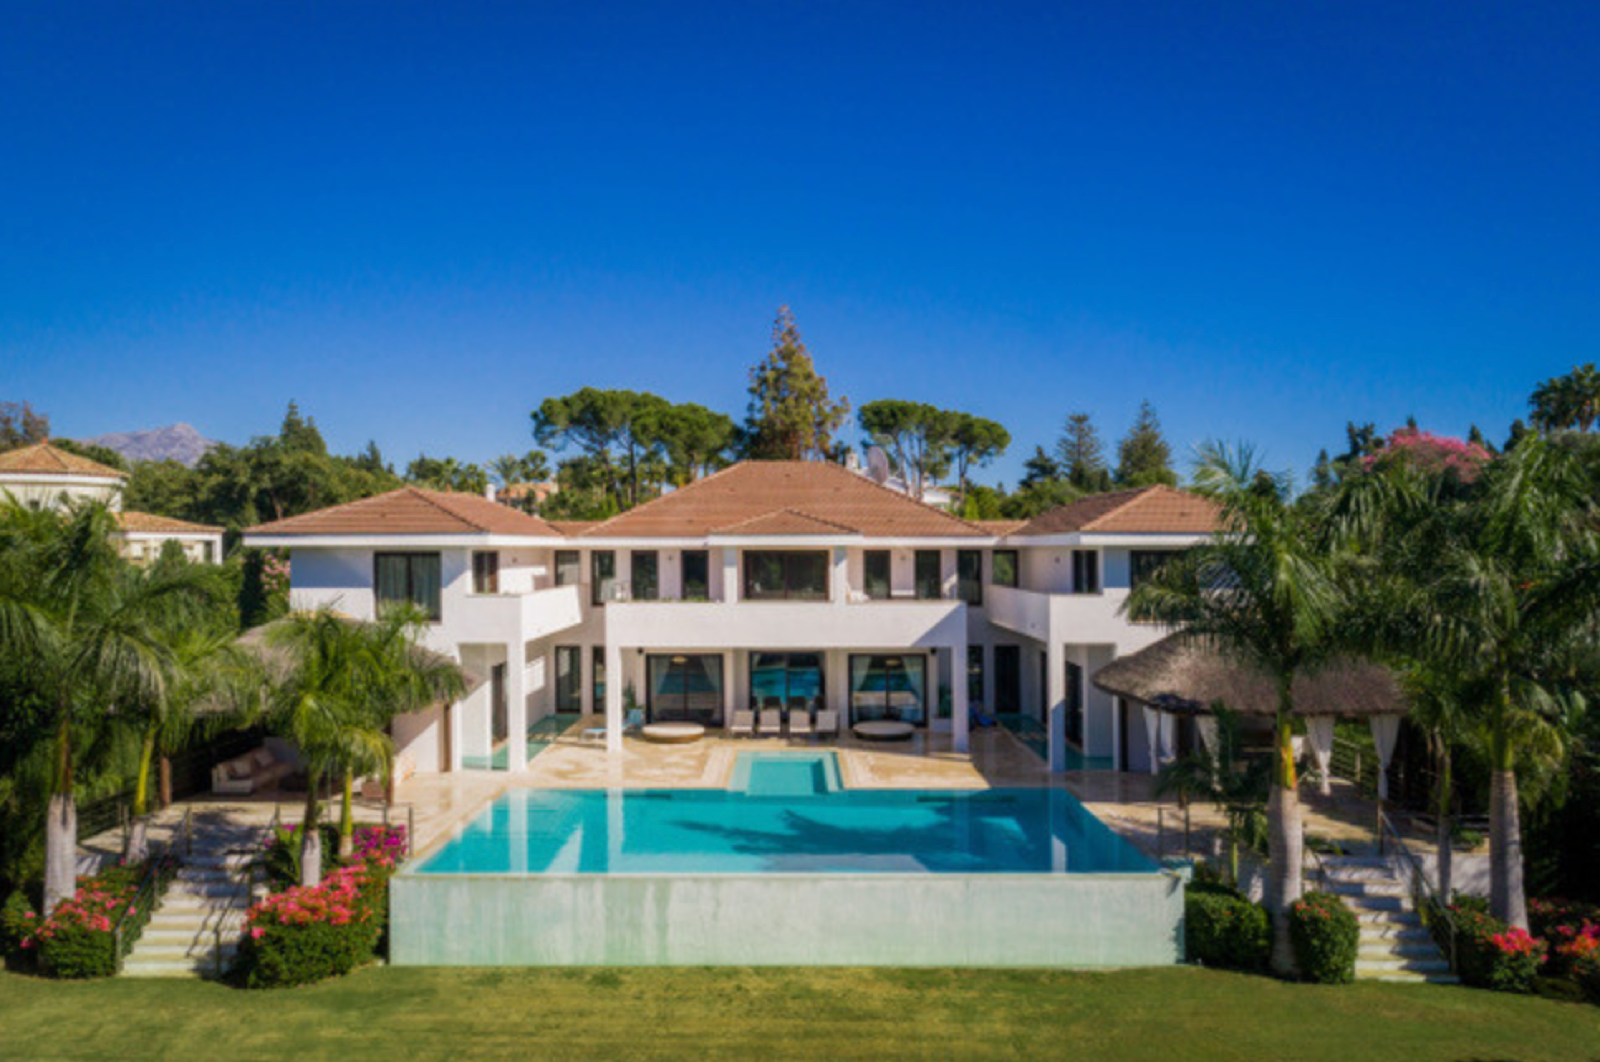 Grandiosa villa moderna situada en una de las urbanizaciones de lado playa más exclusivas , la propiedad se encuentra a cinco minutos andando de la playa de Guadalmina así como de su c